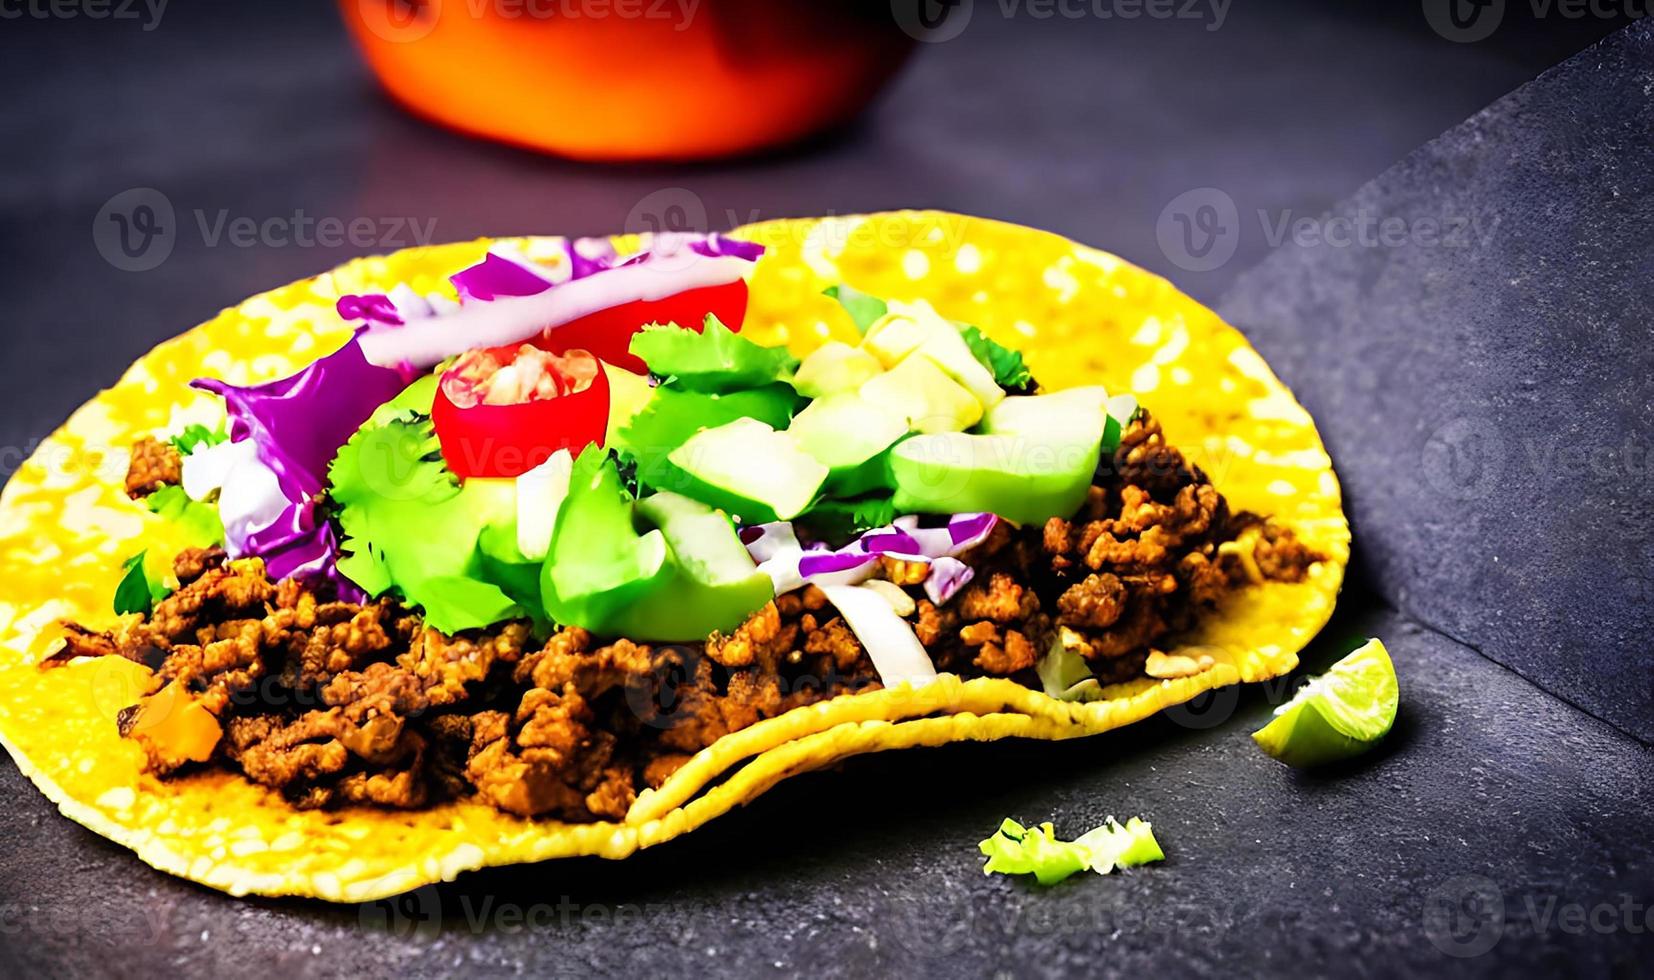 messicano cibo delizioso tacos. foto